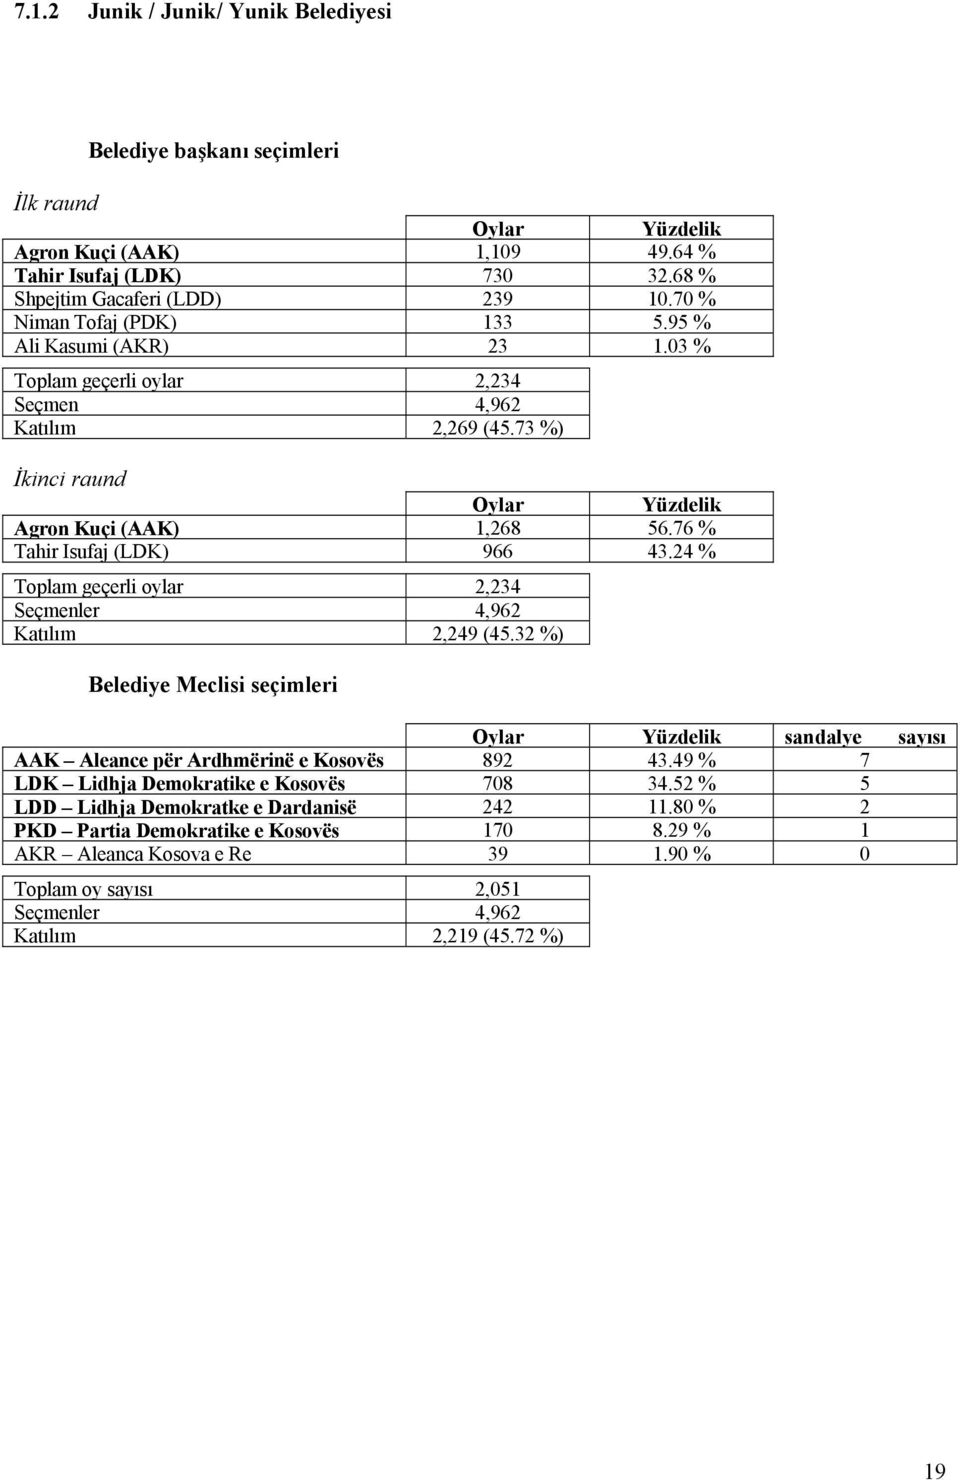 76 % Tahir Isufaj (LDK) 966 43.24 % Toplam geçerli oylar 2,234 Seçmenler 4,962 Katılım 2,249 (45.